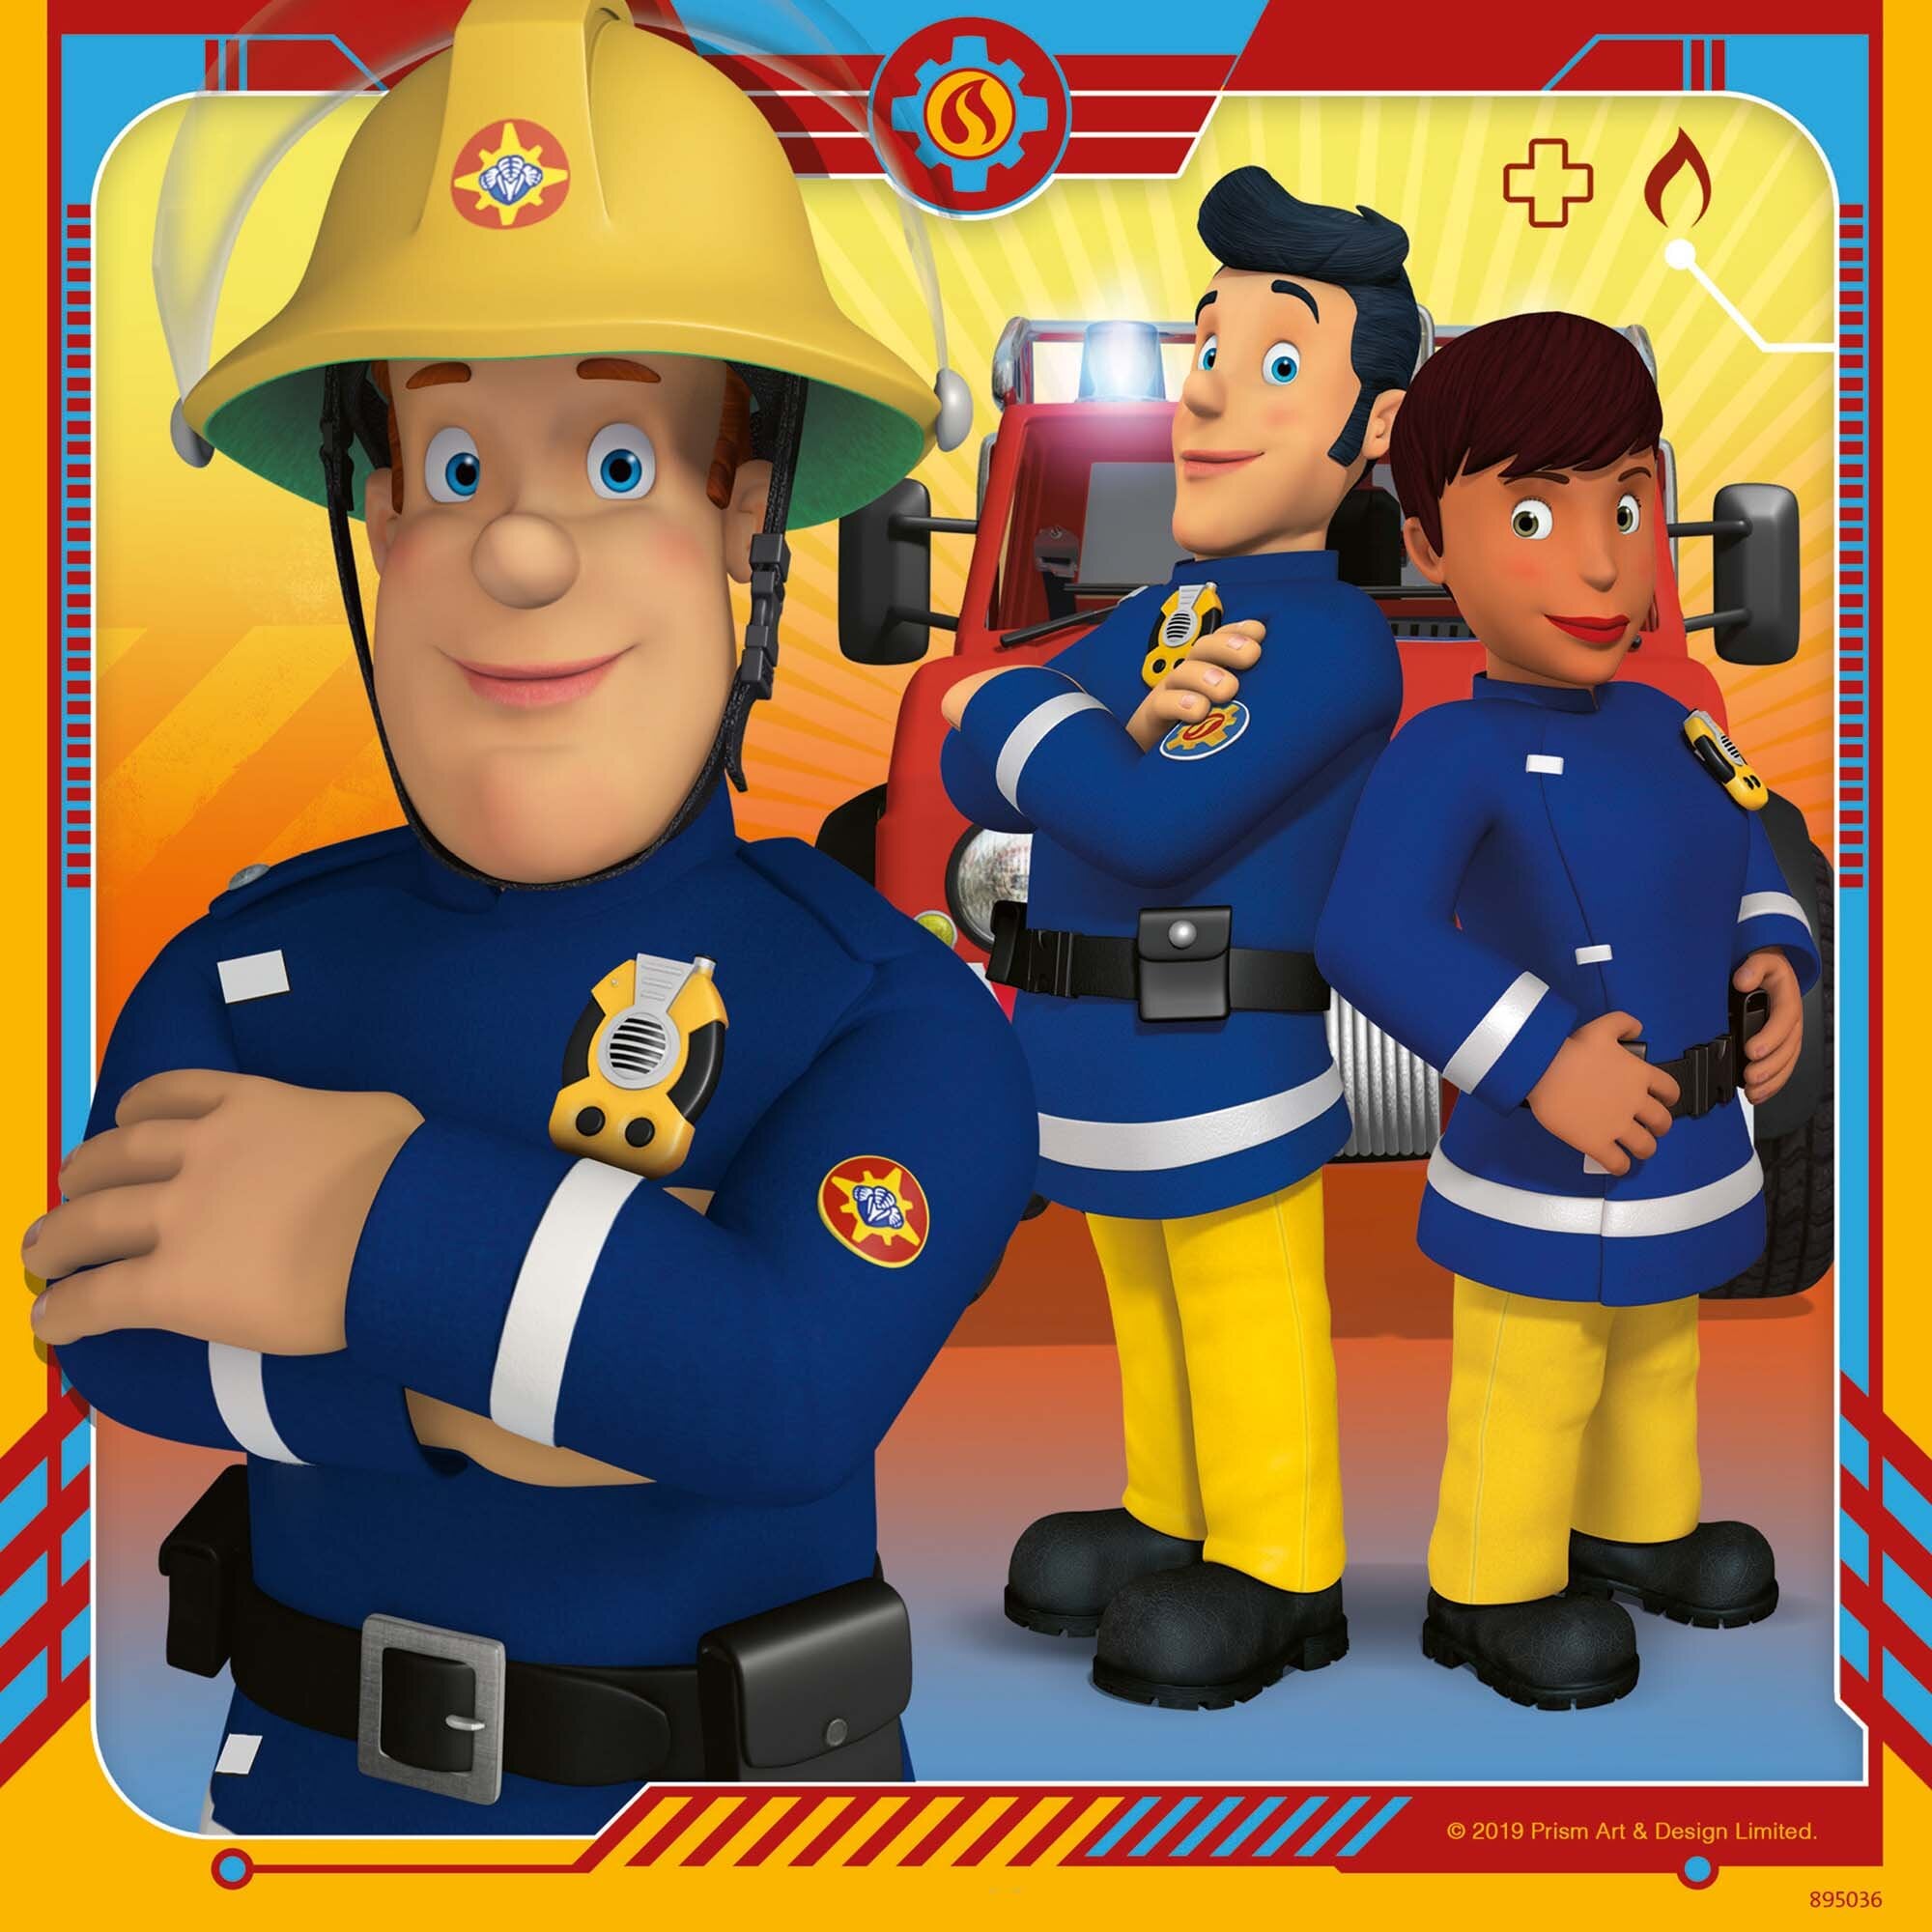 Ravensburger Puzzle - Sam, der Feuerwehrmann 3x49 Teile